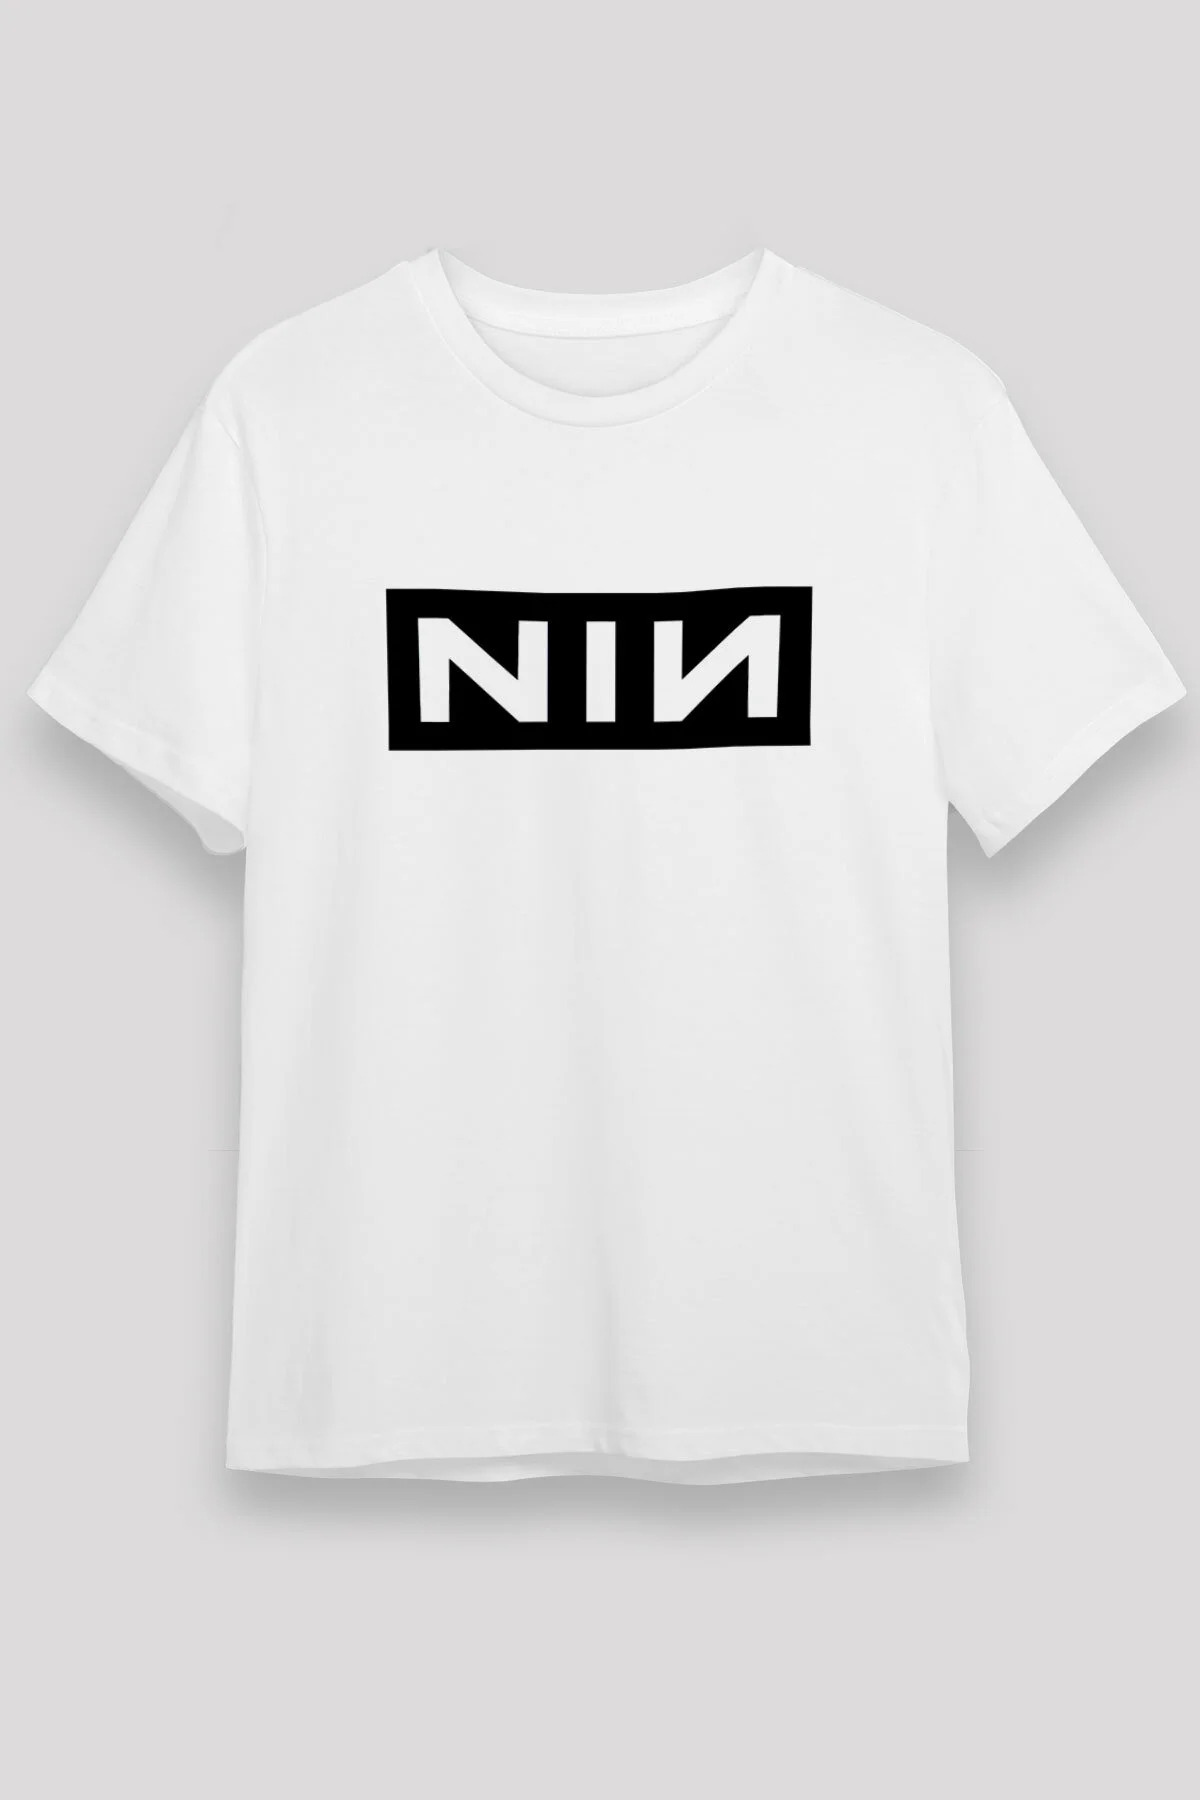 Nine Inch Nails T shirt, Music Band Tshirt  01/